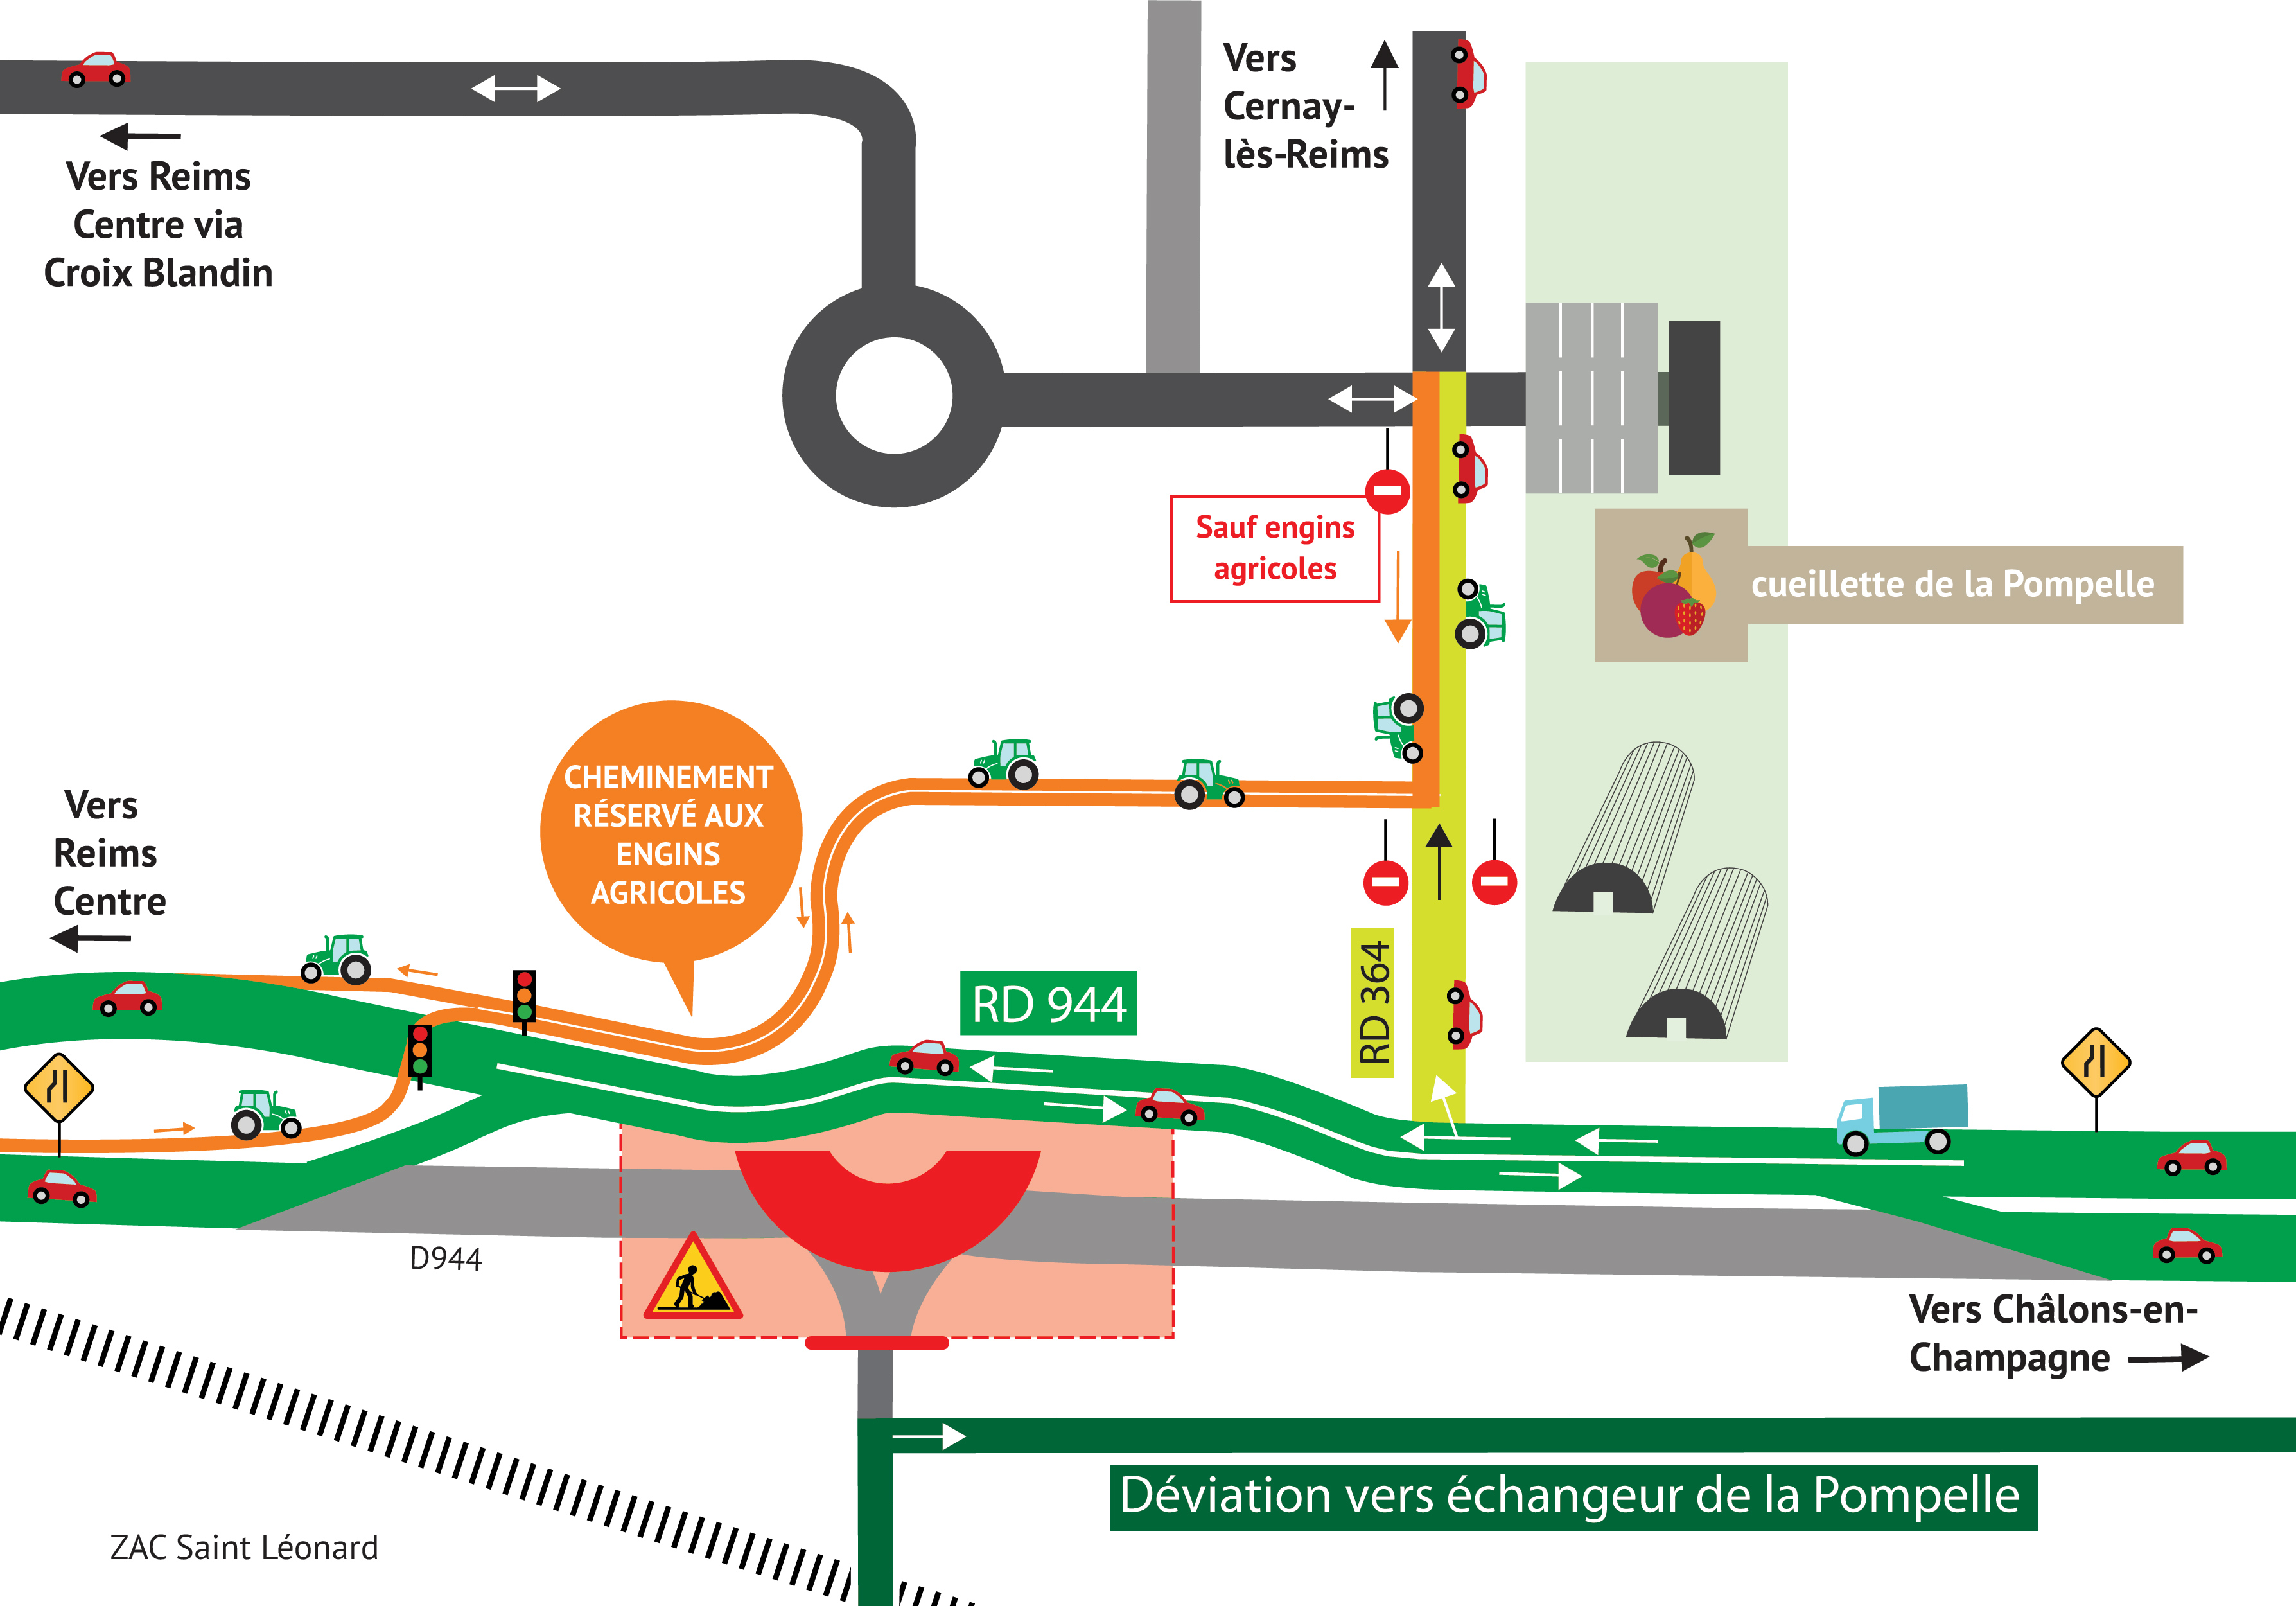 plan des travaux indiquant les sens de circulation et de trafic avec le giratoire en rouge, la RD944 sur une voie en vert, le chemin agricole en orange et l'accès à la cueillette de la Pompelle en vert clair